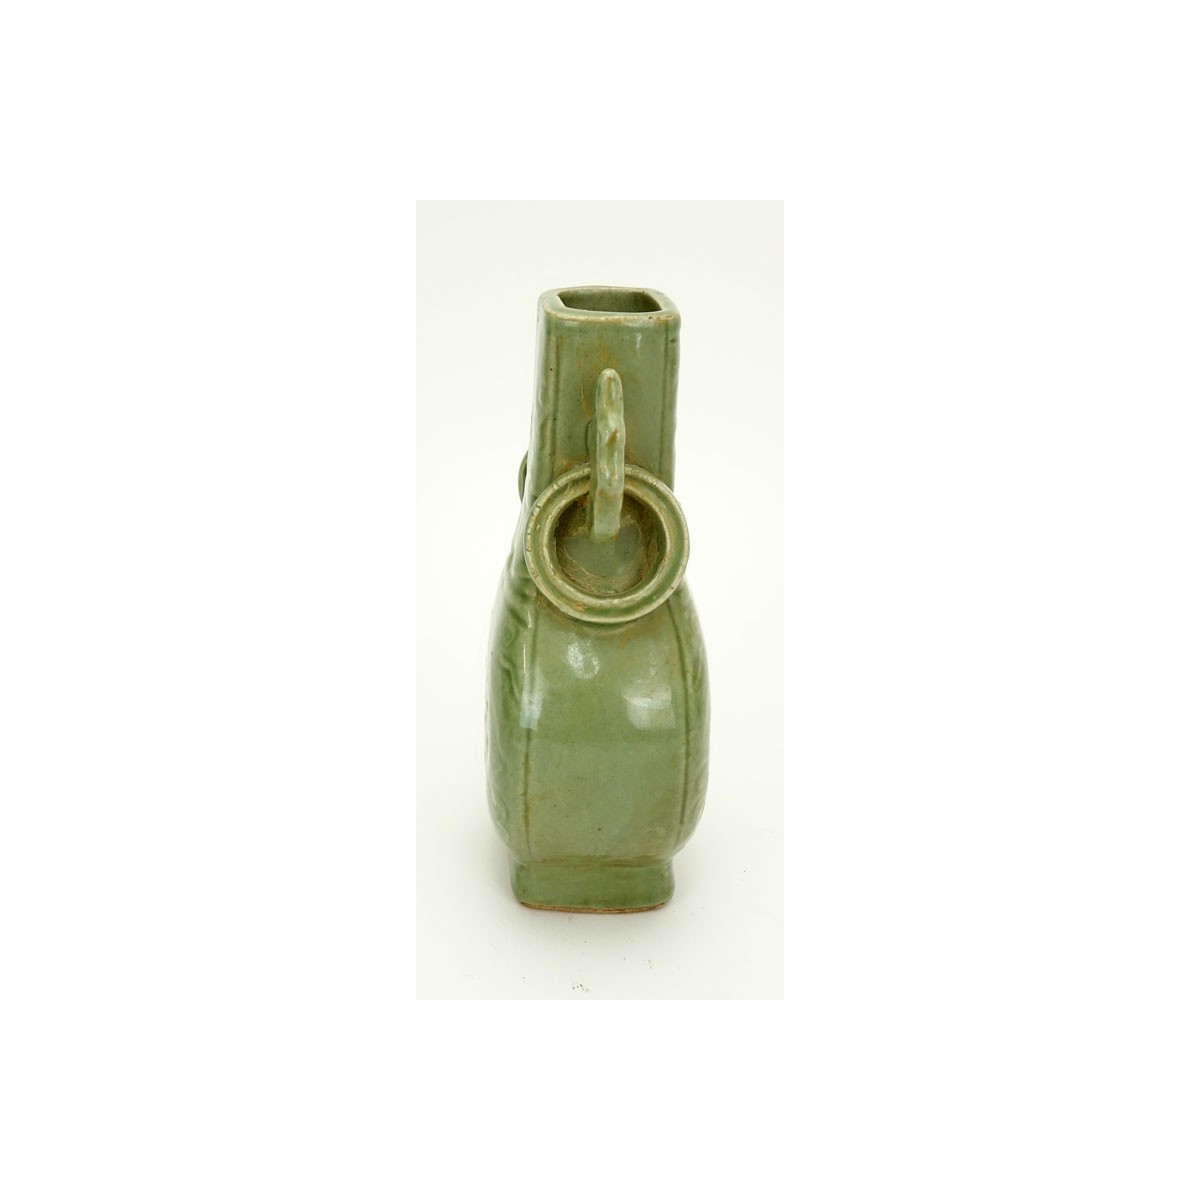 Chinese Yuan Dynasty Celadon Glazed Vase